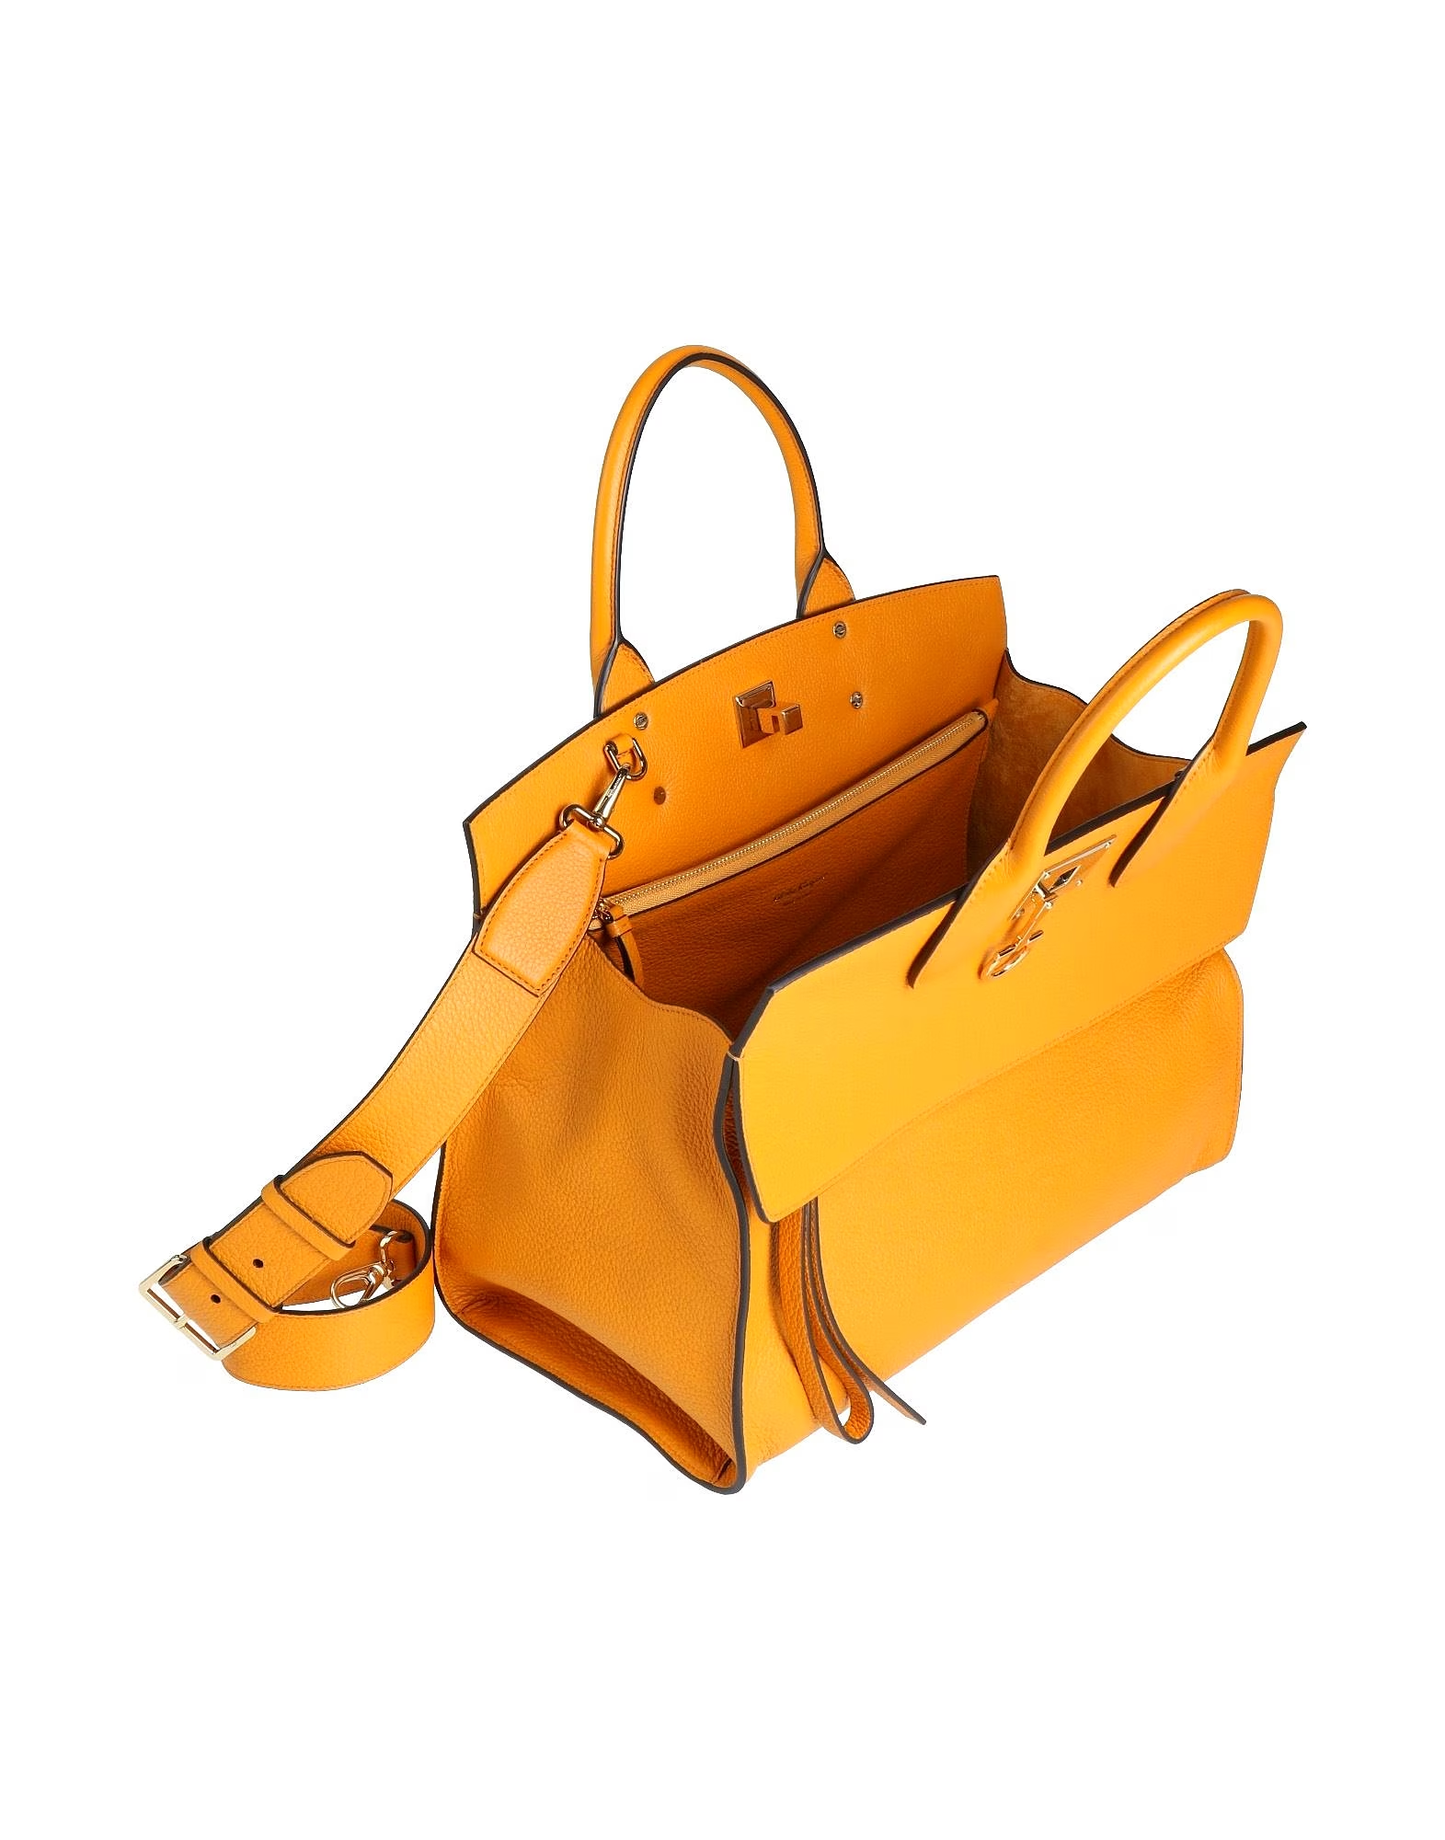 PARIOLI BAGS - Discount Designer Handbags Outlet | FERRAGAMO Handbags